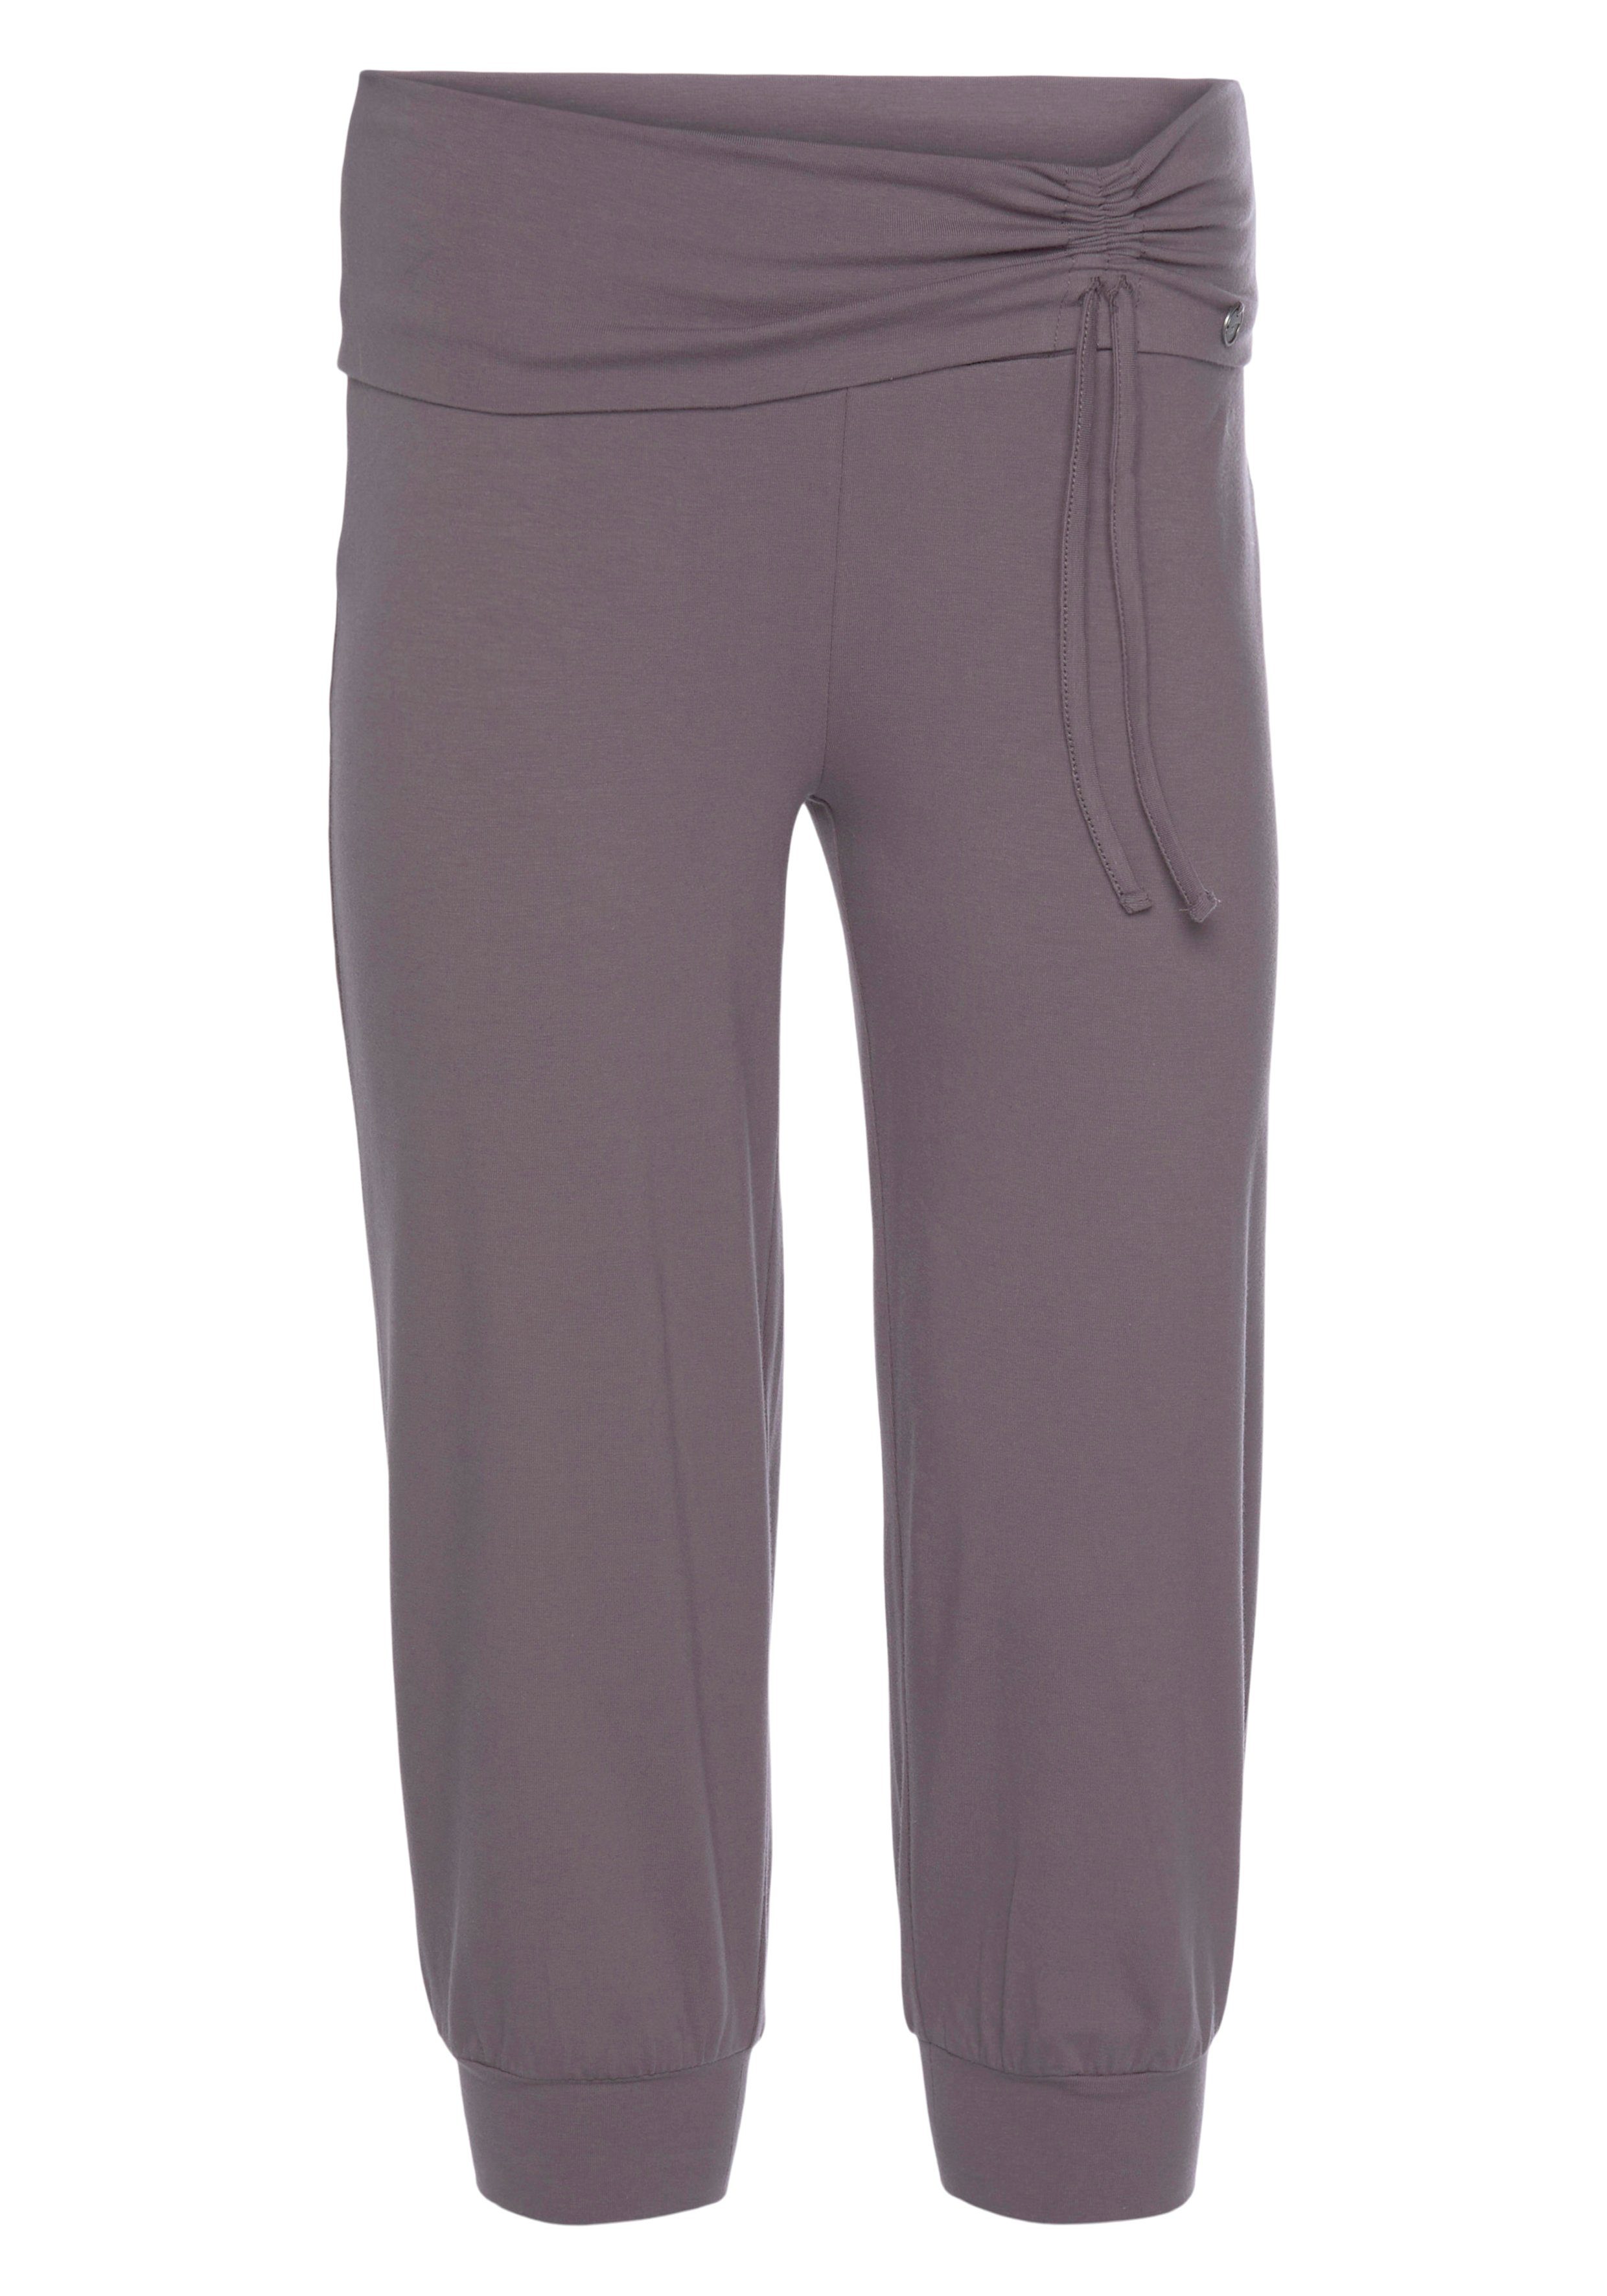 Ocean Sportswear Yogahose »Soulwear - 3/4 Yoga Pants« online kaufen | OTTO